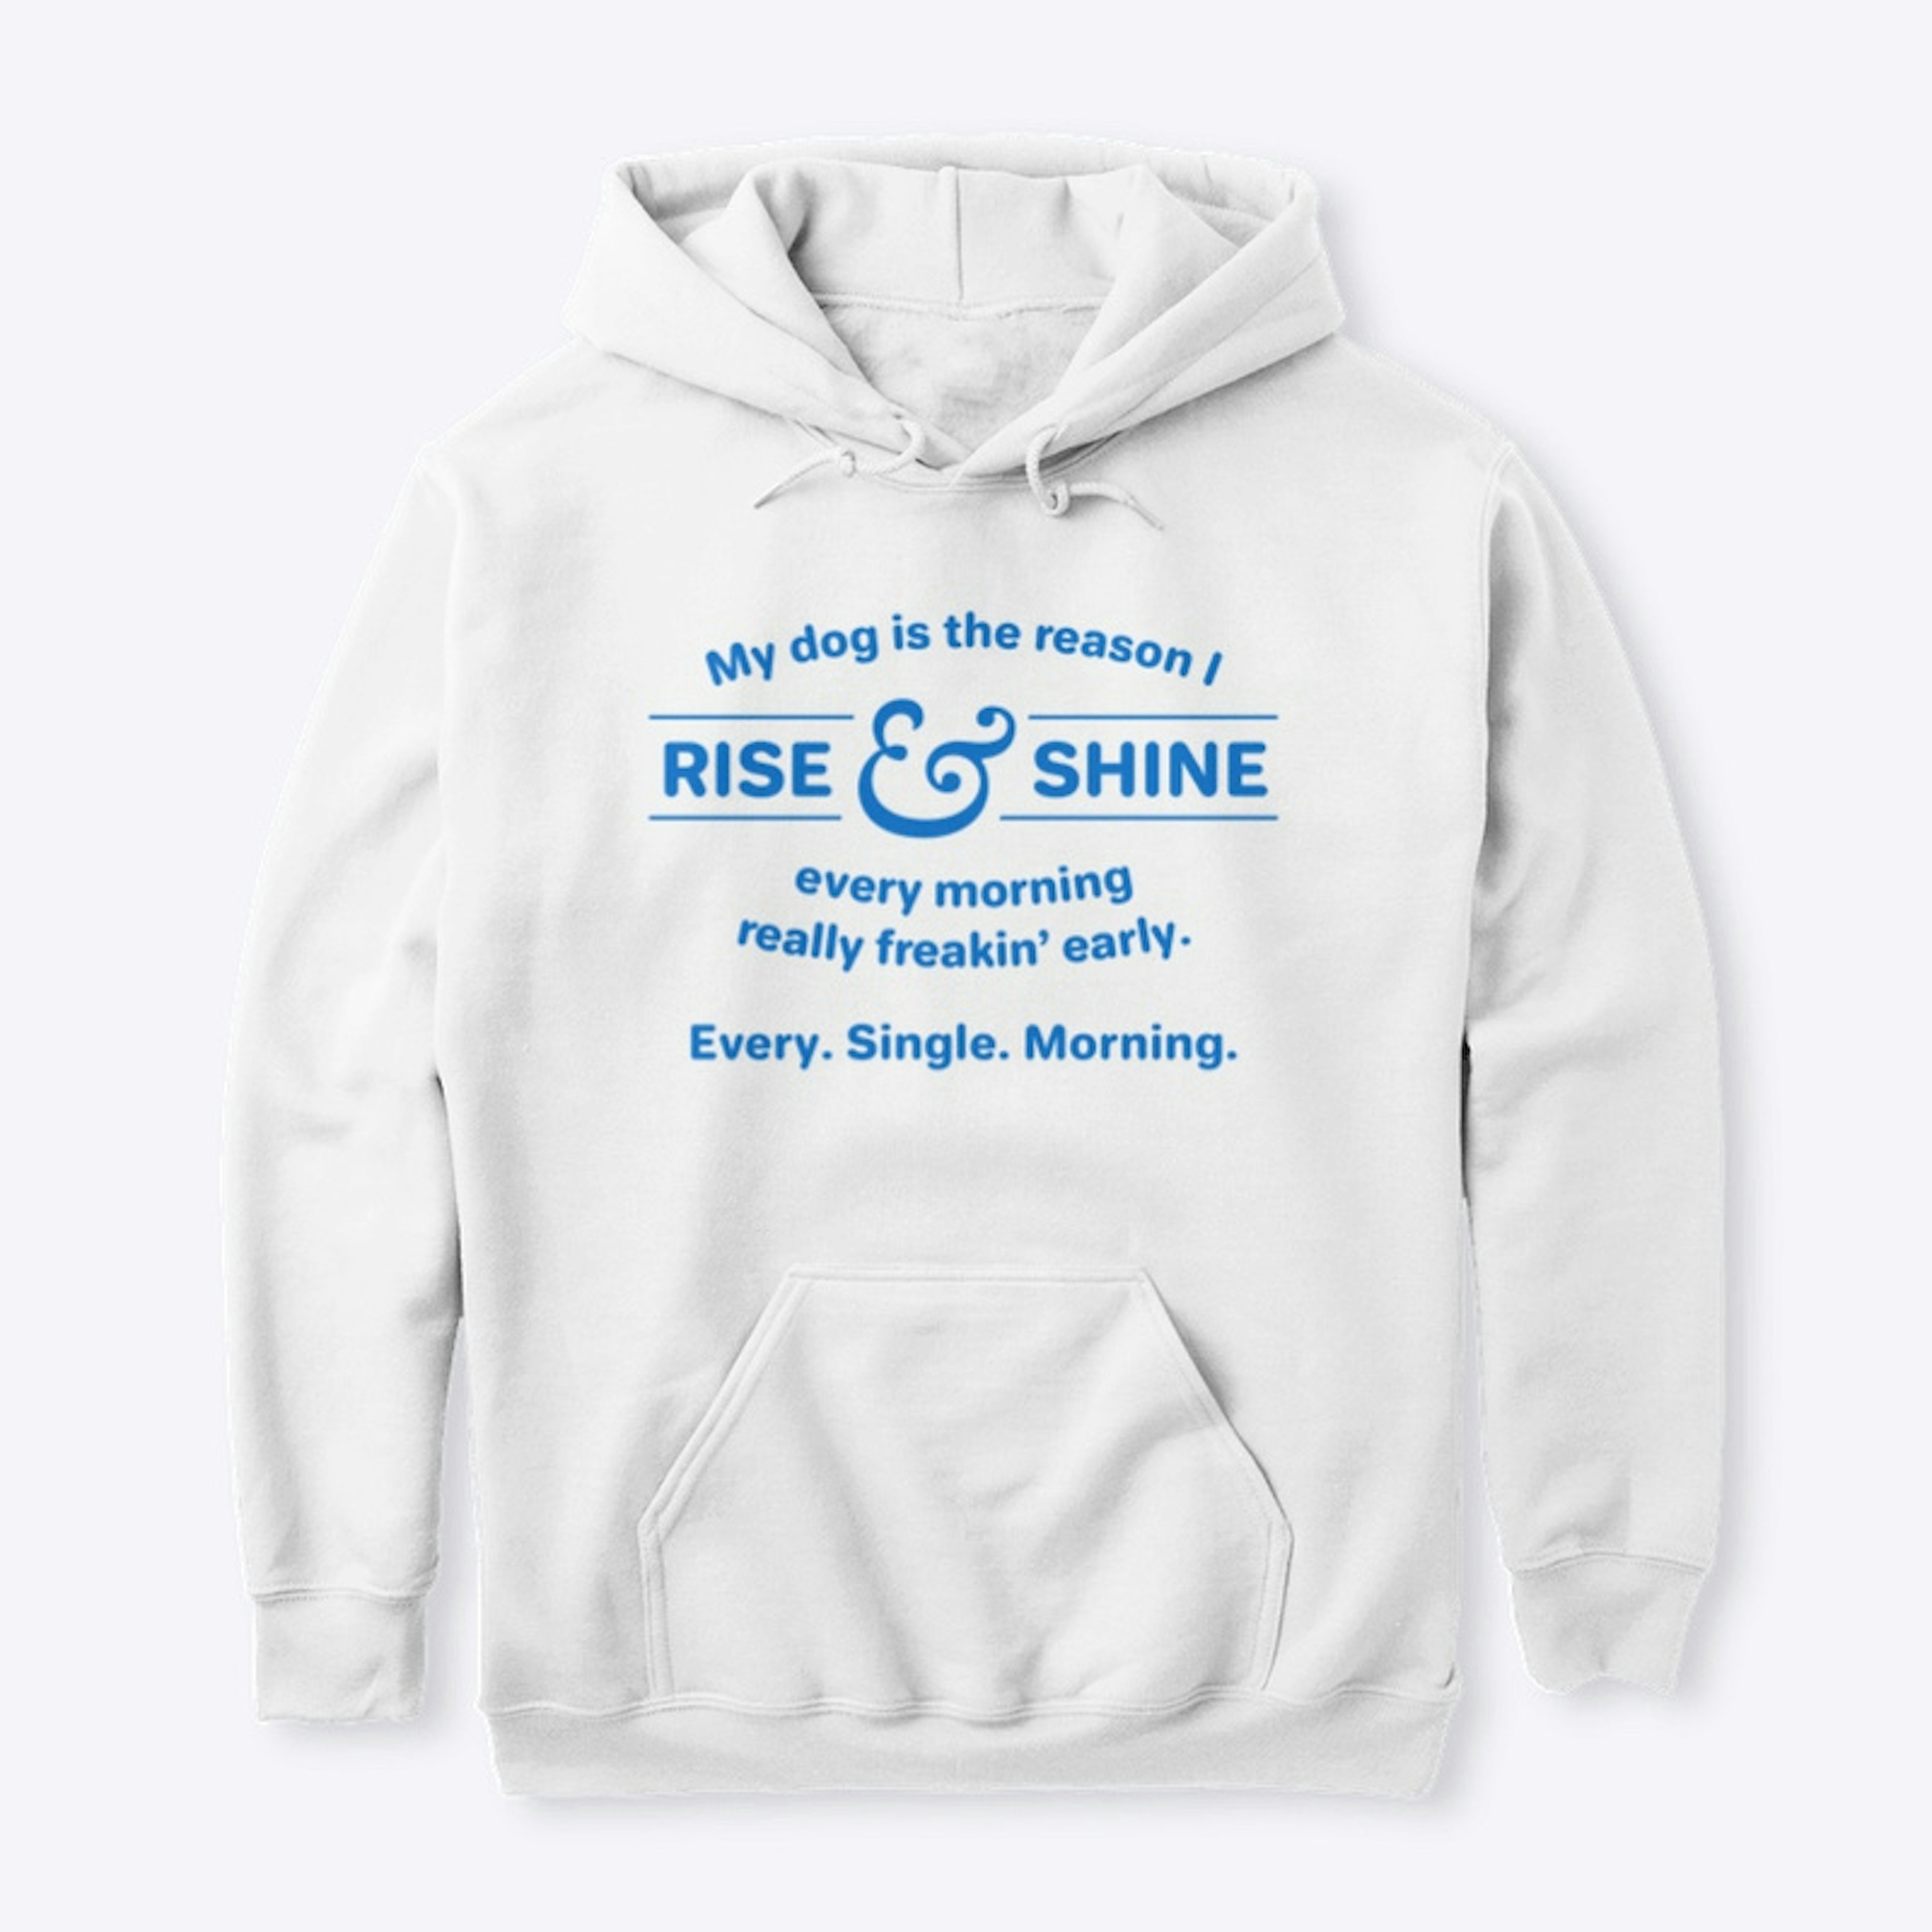 Rise and Shine T-shirt and Mug